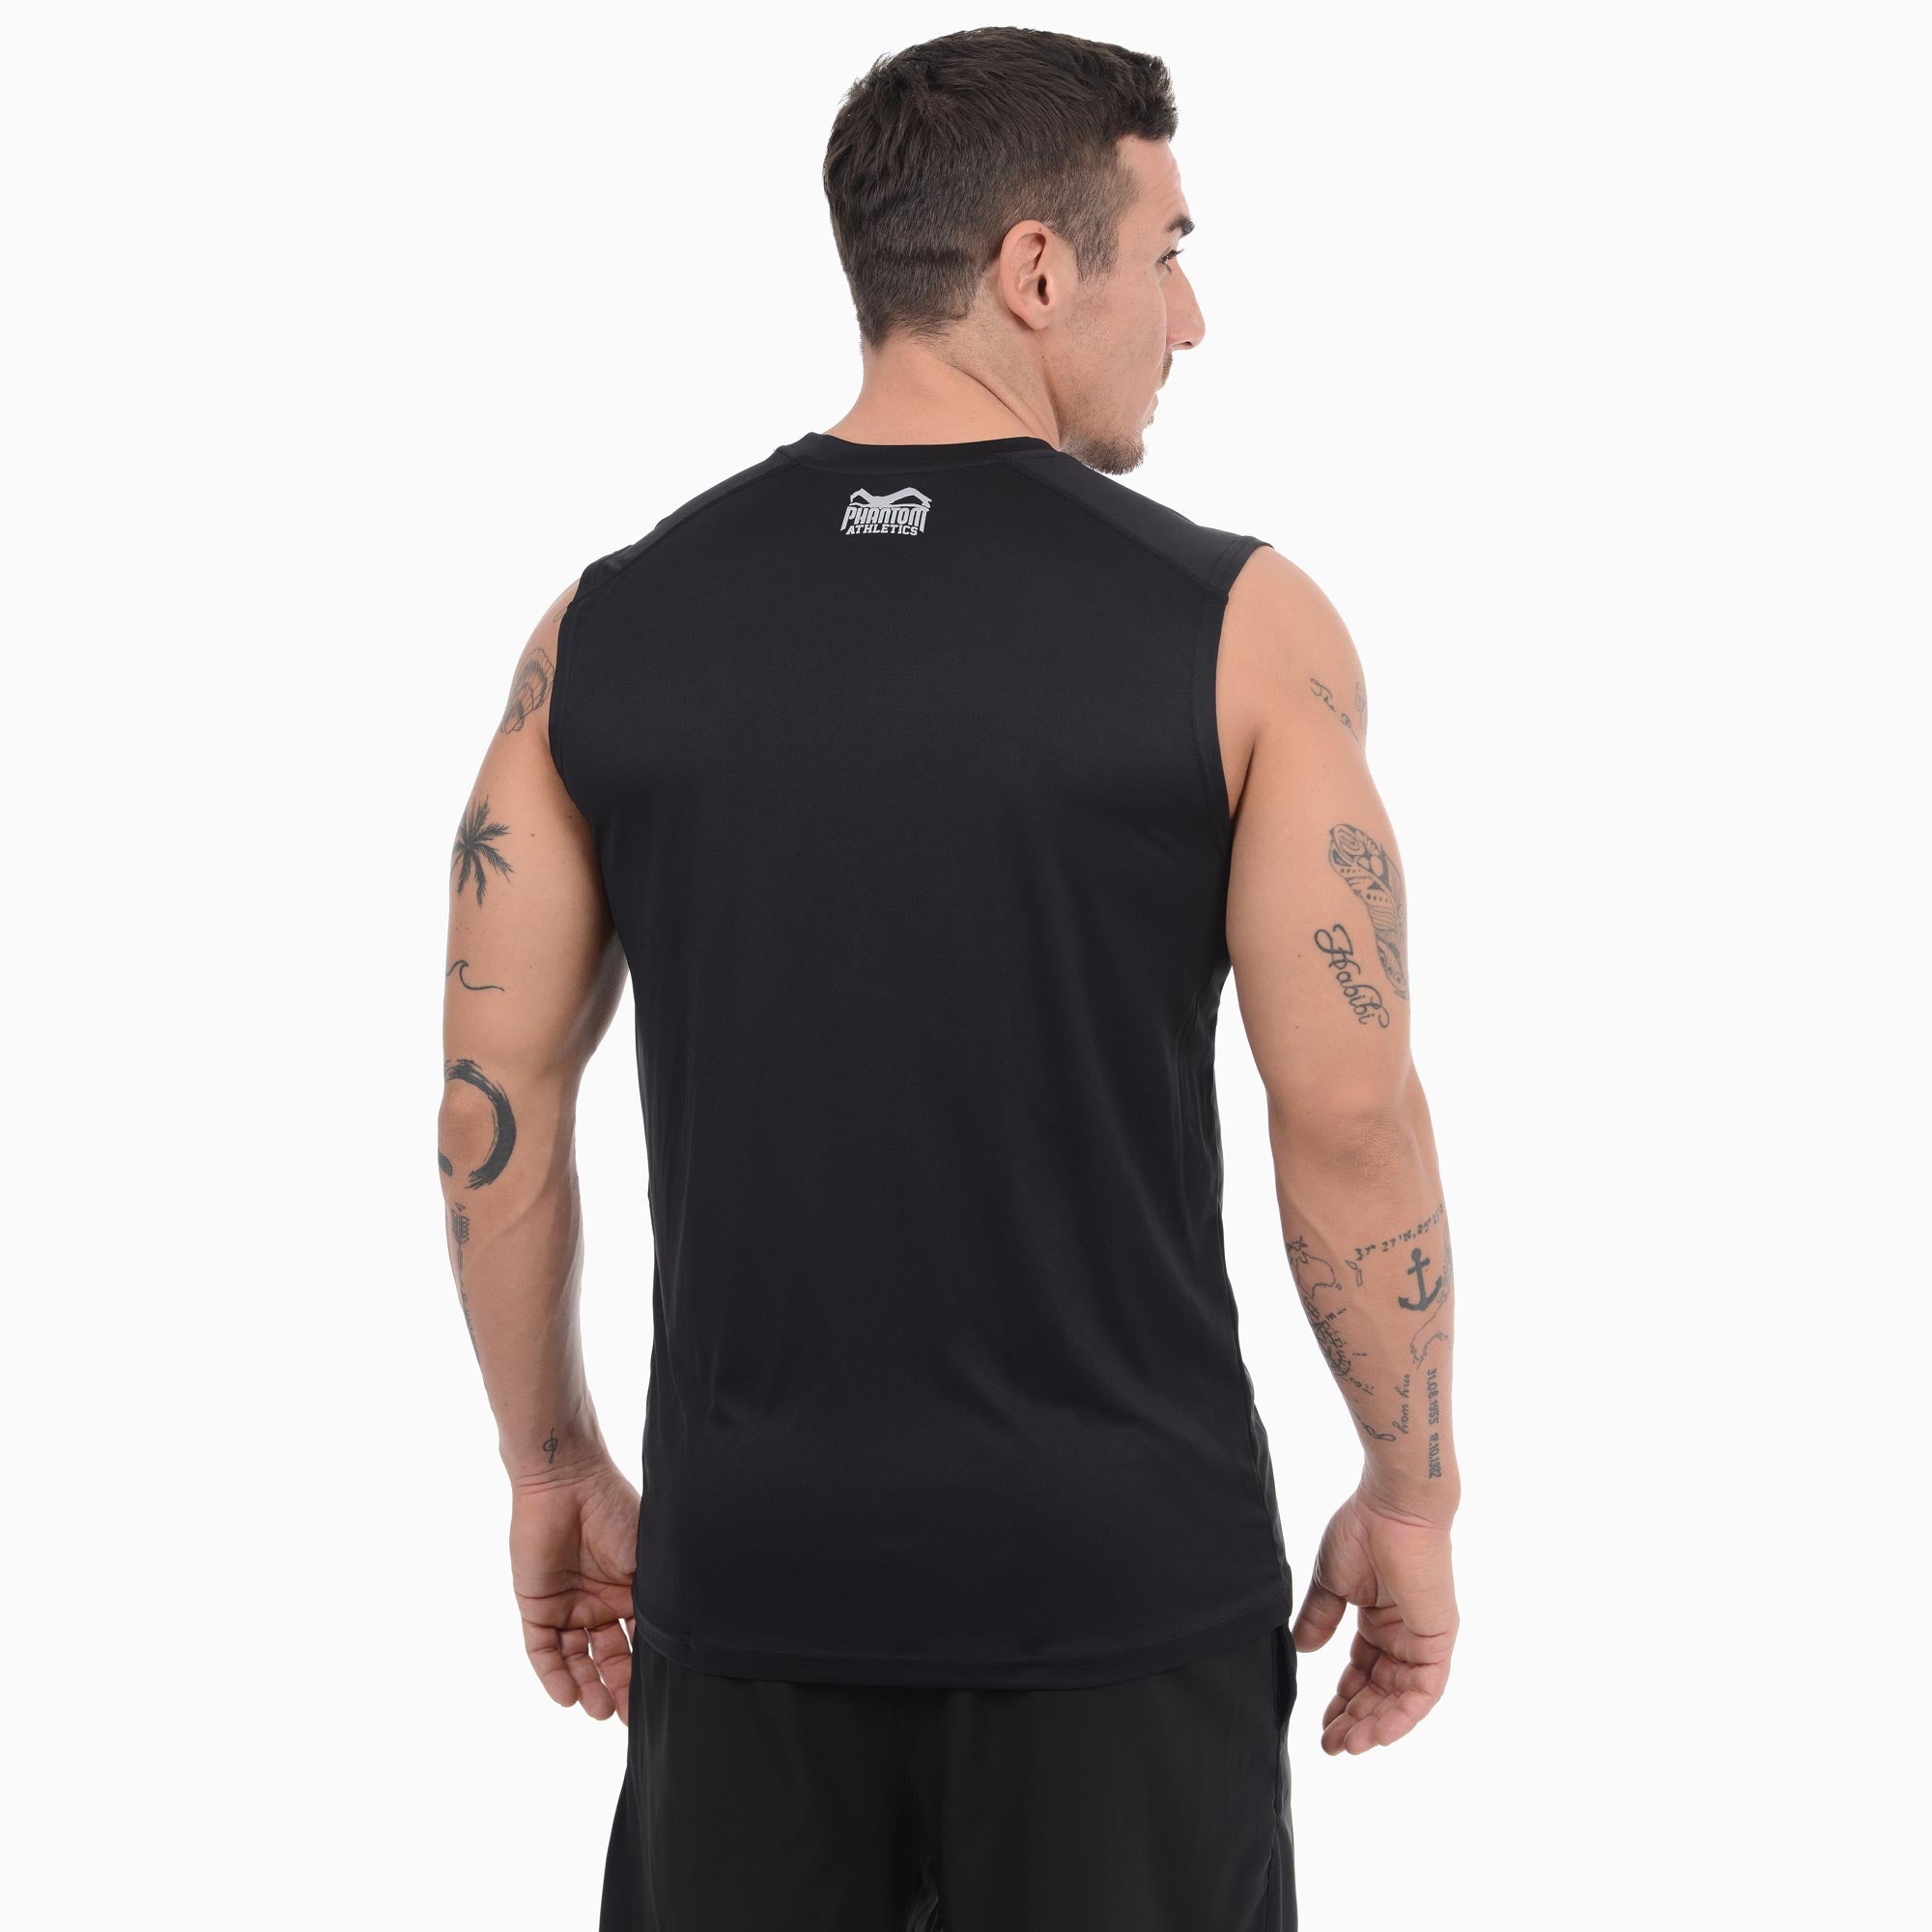 Phantom camisa Nobody Carest-shirt para fitness artes marciales entrenamiento musculacion 